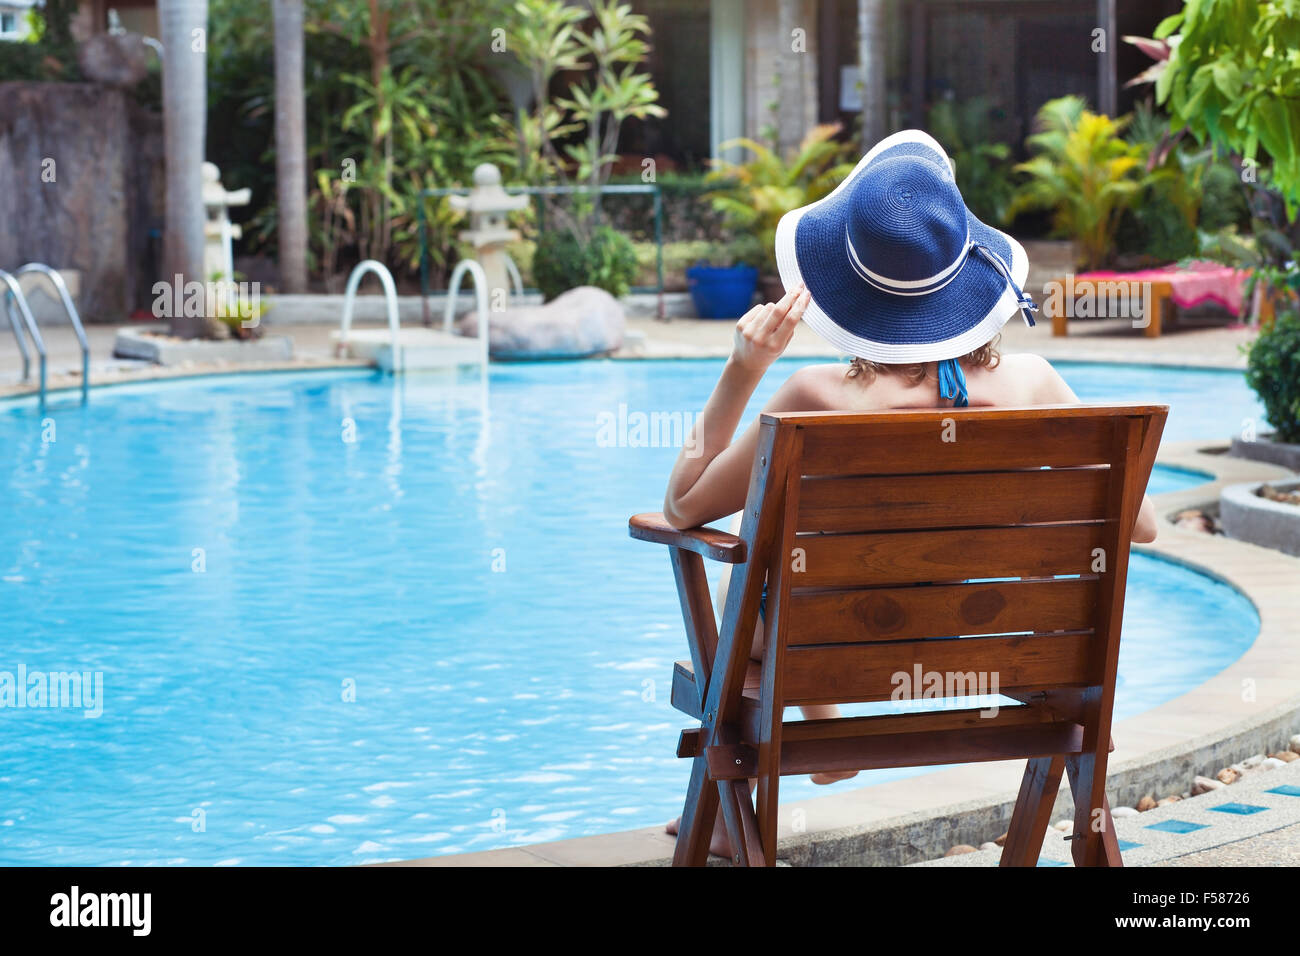 Vacances d'été, woman relaxing in bel hôtel de luxe proche piscine Banque D'Images